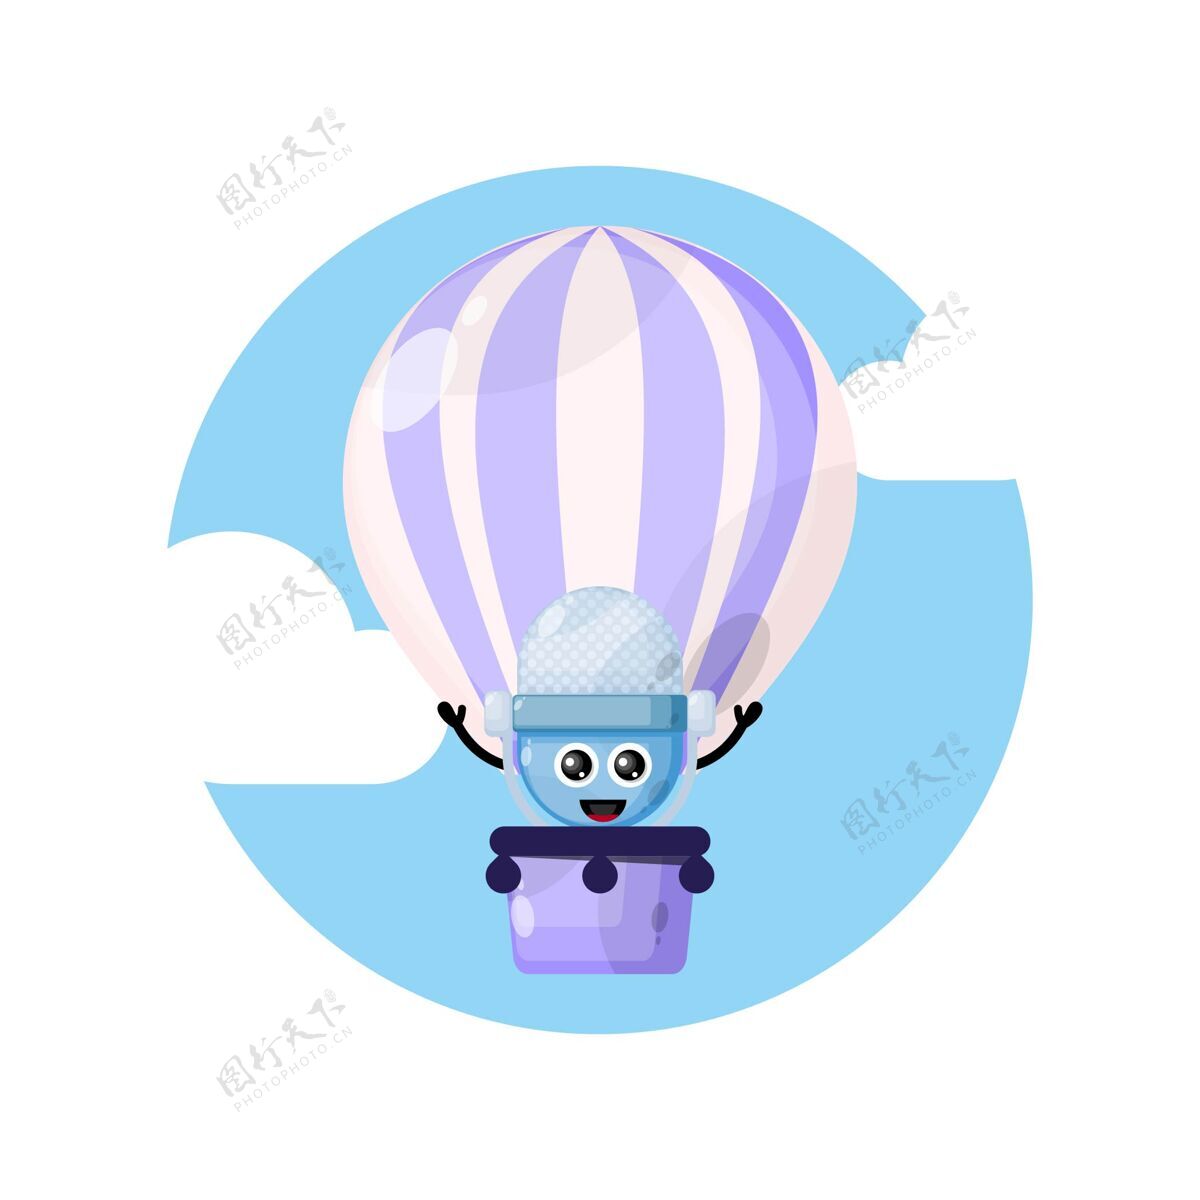 卡通人物热气球麦克风吉祥物字符标志飞行热气球平面设计